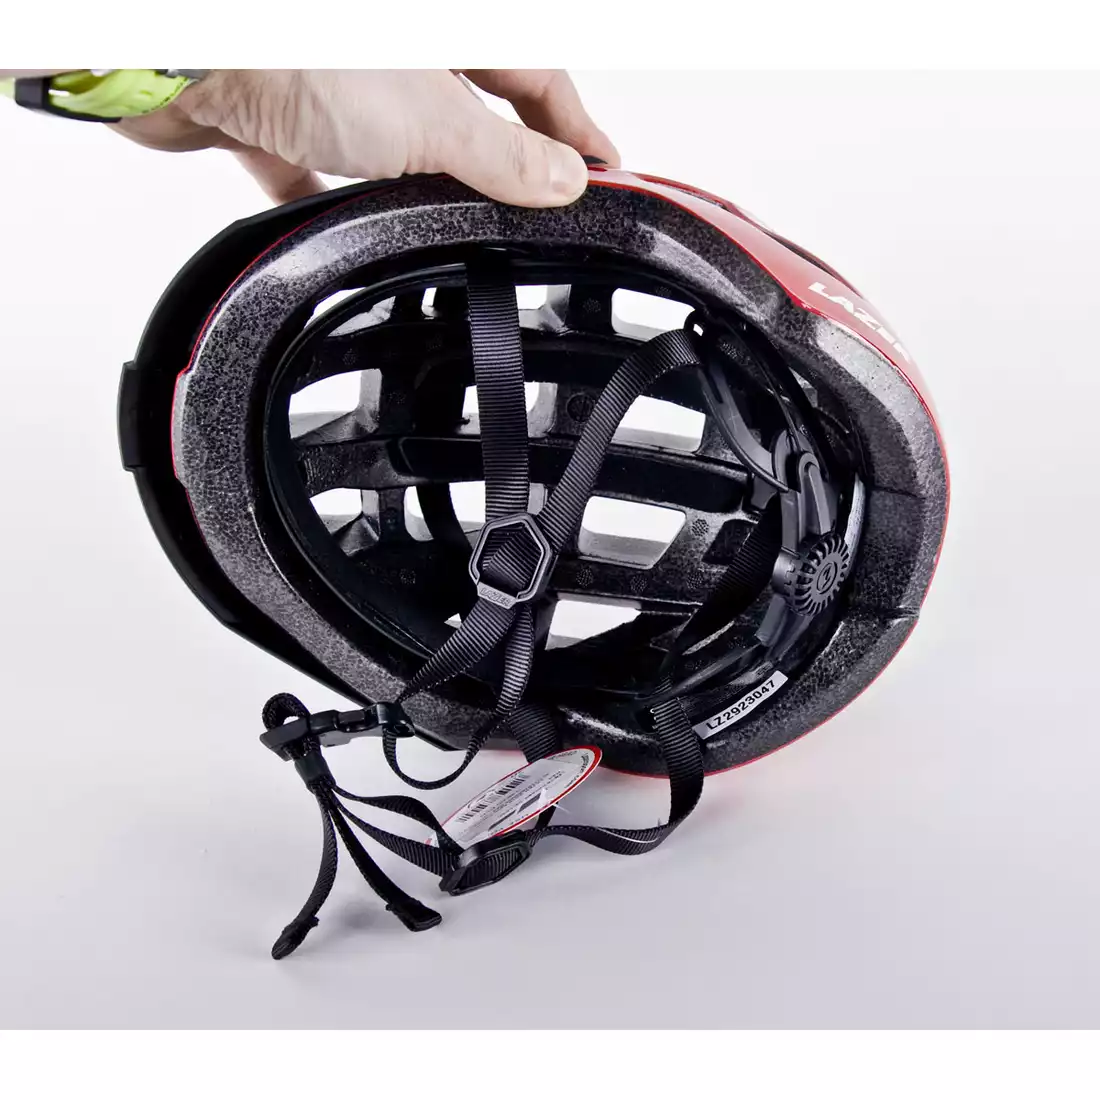 LAZER Compact kask rowerowy czerwony połysk